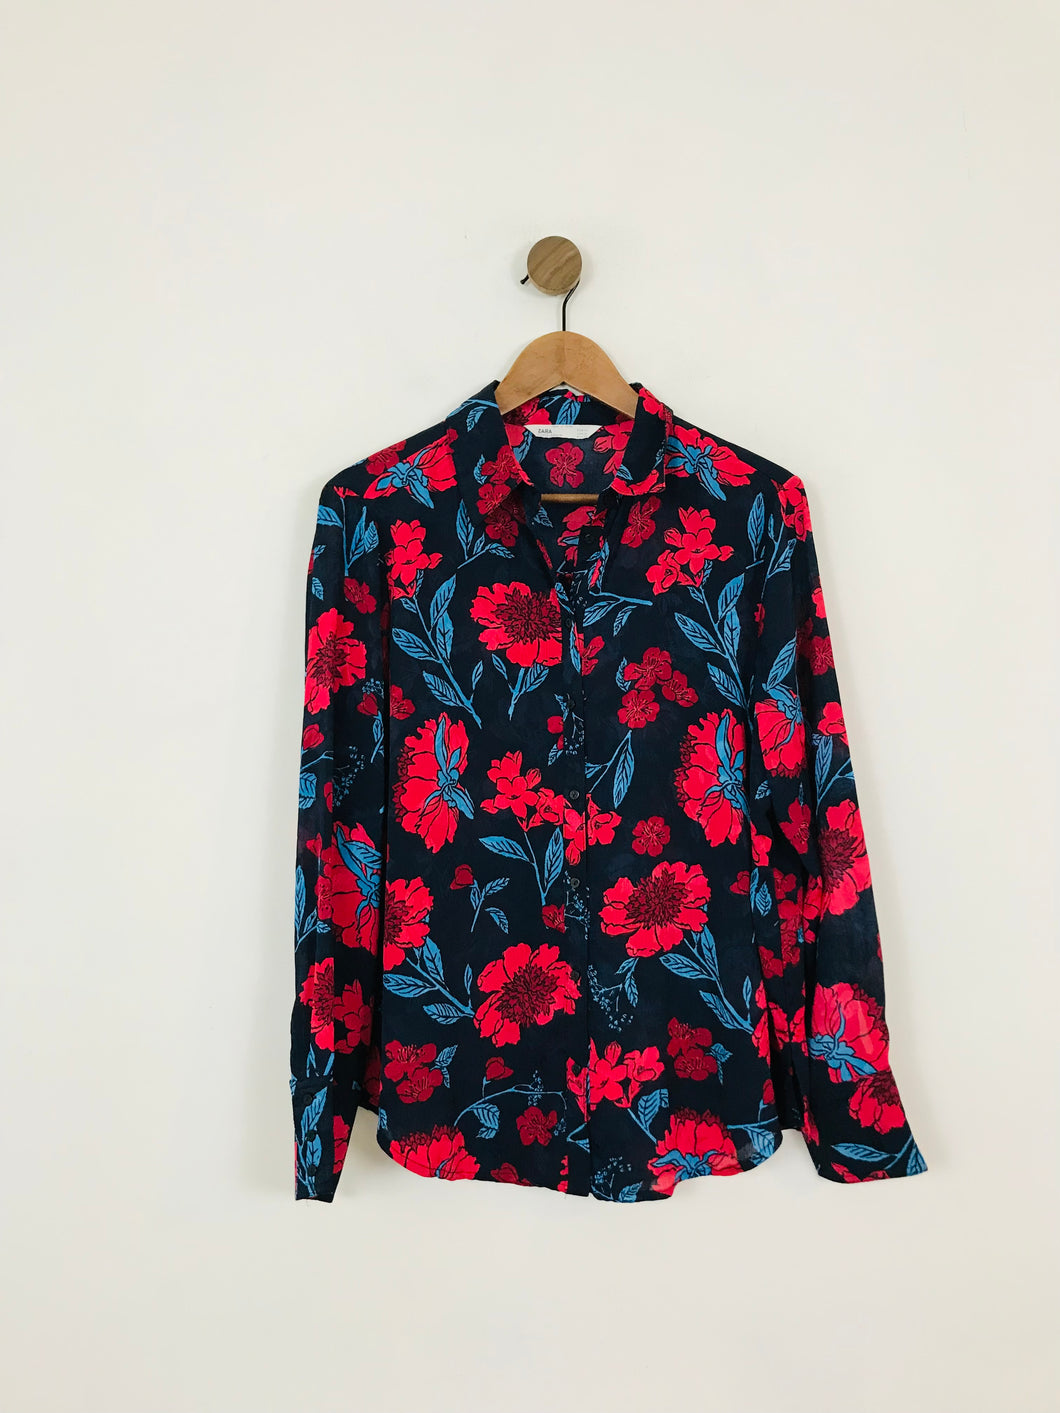 Zara Women's Floral Button-Up Shirt | XL UK16 | Multicolour